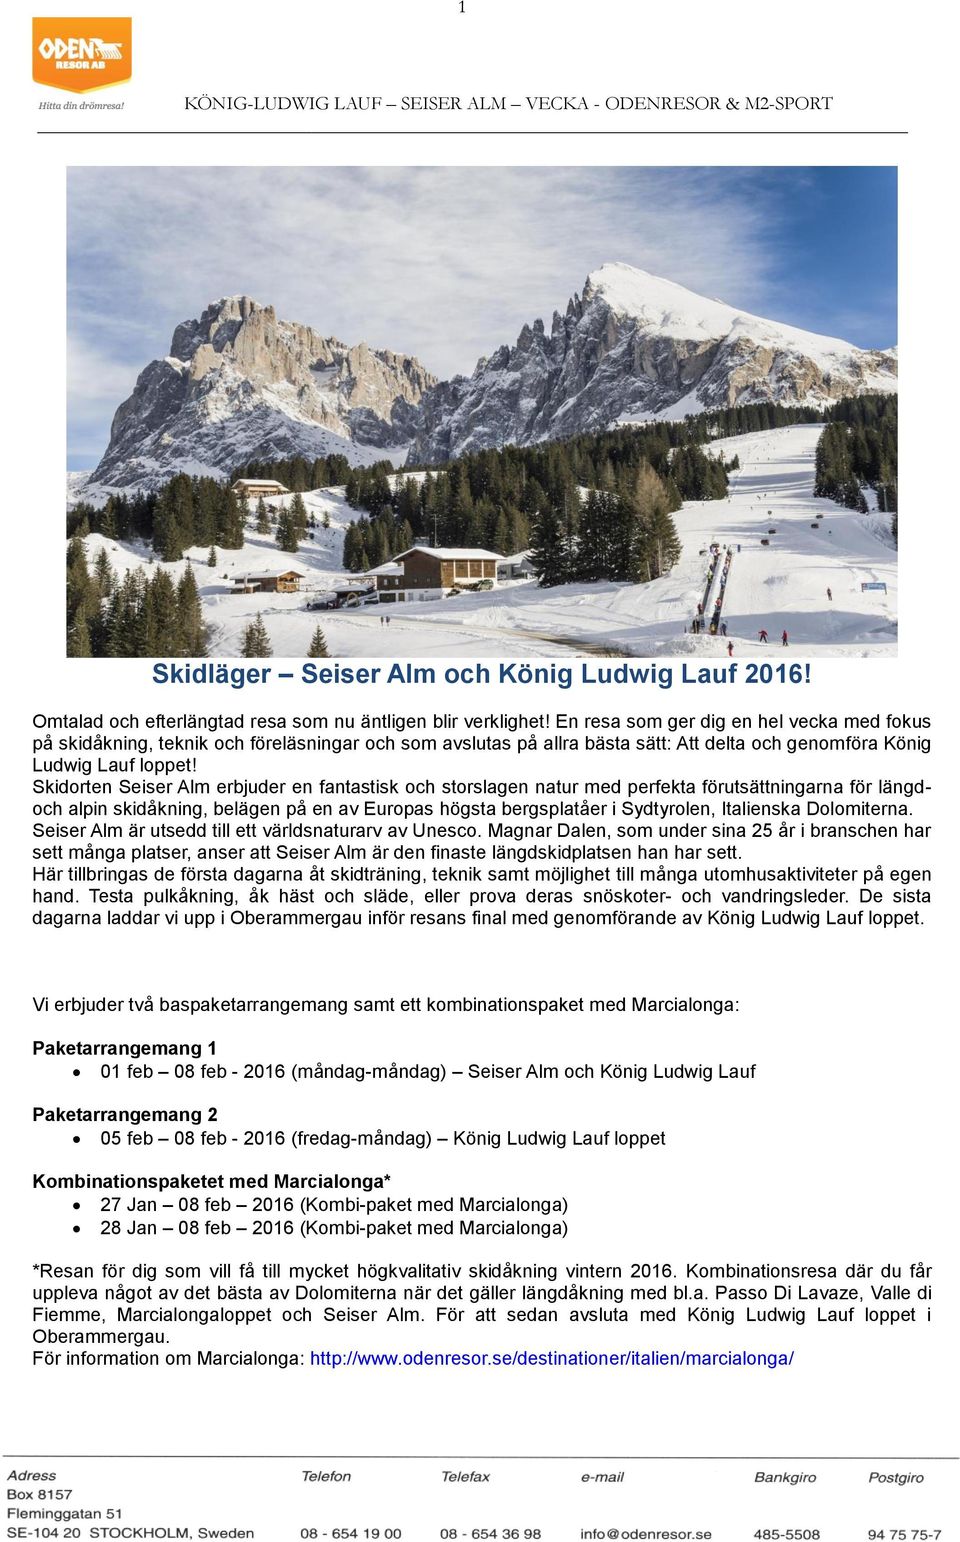 Skidorten Seiser Alm erbjuder en fantastisk och storslagen natur med perfekta förutsättningarna för längdoch alpin skidåkning, belägen på en av Europas högsta bergsplatåer i Sydtyrolen, Italienska